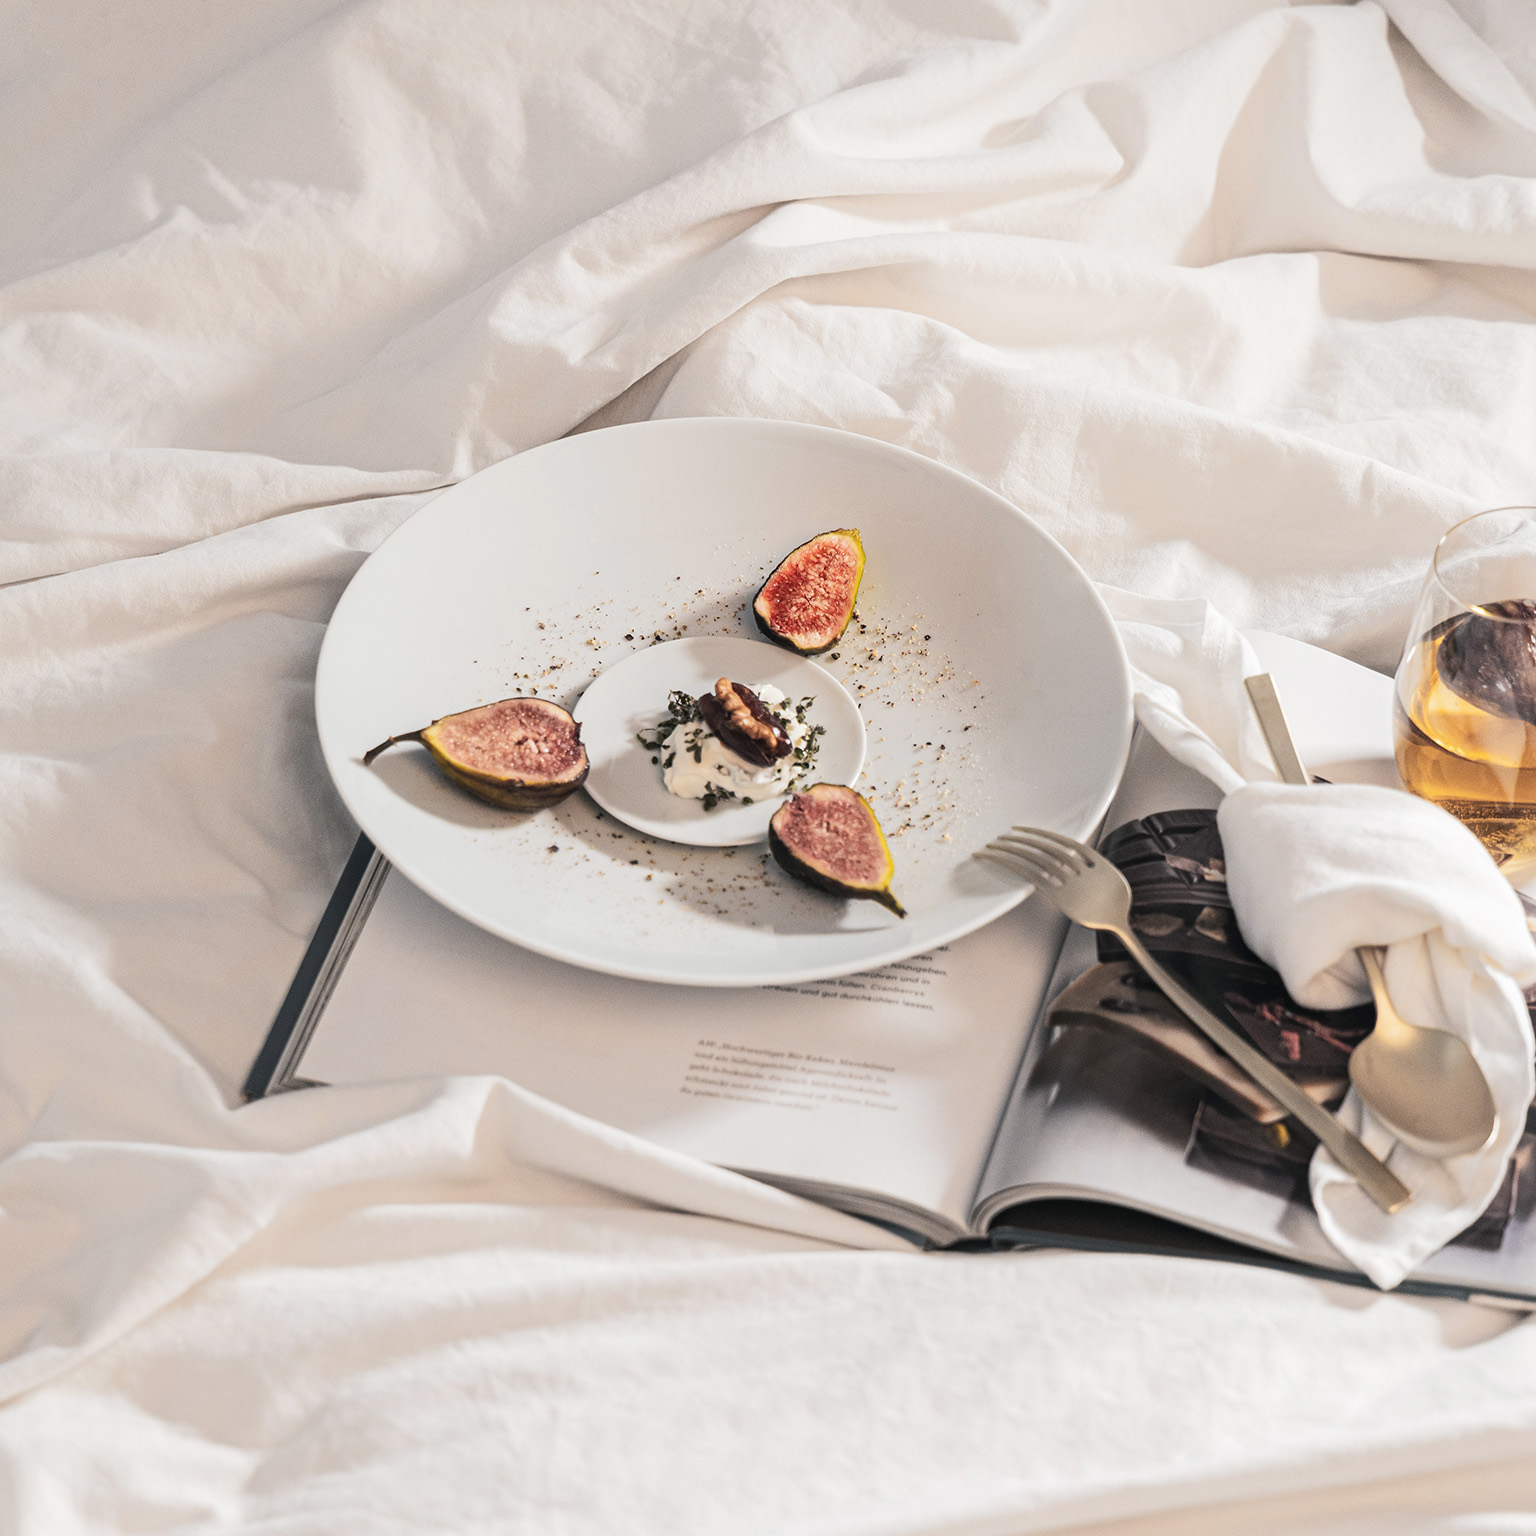 Assiette TAC et assiette à pain garnie de figues et de dessert, posées sur un drap de table avec un livre ouvert, des couverts, une serviette blanche et un verre.